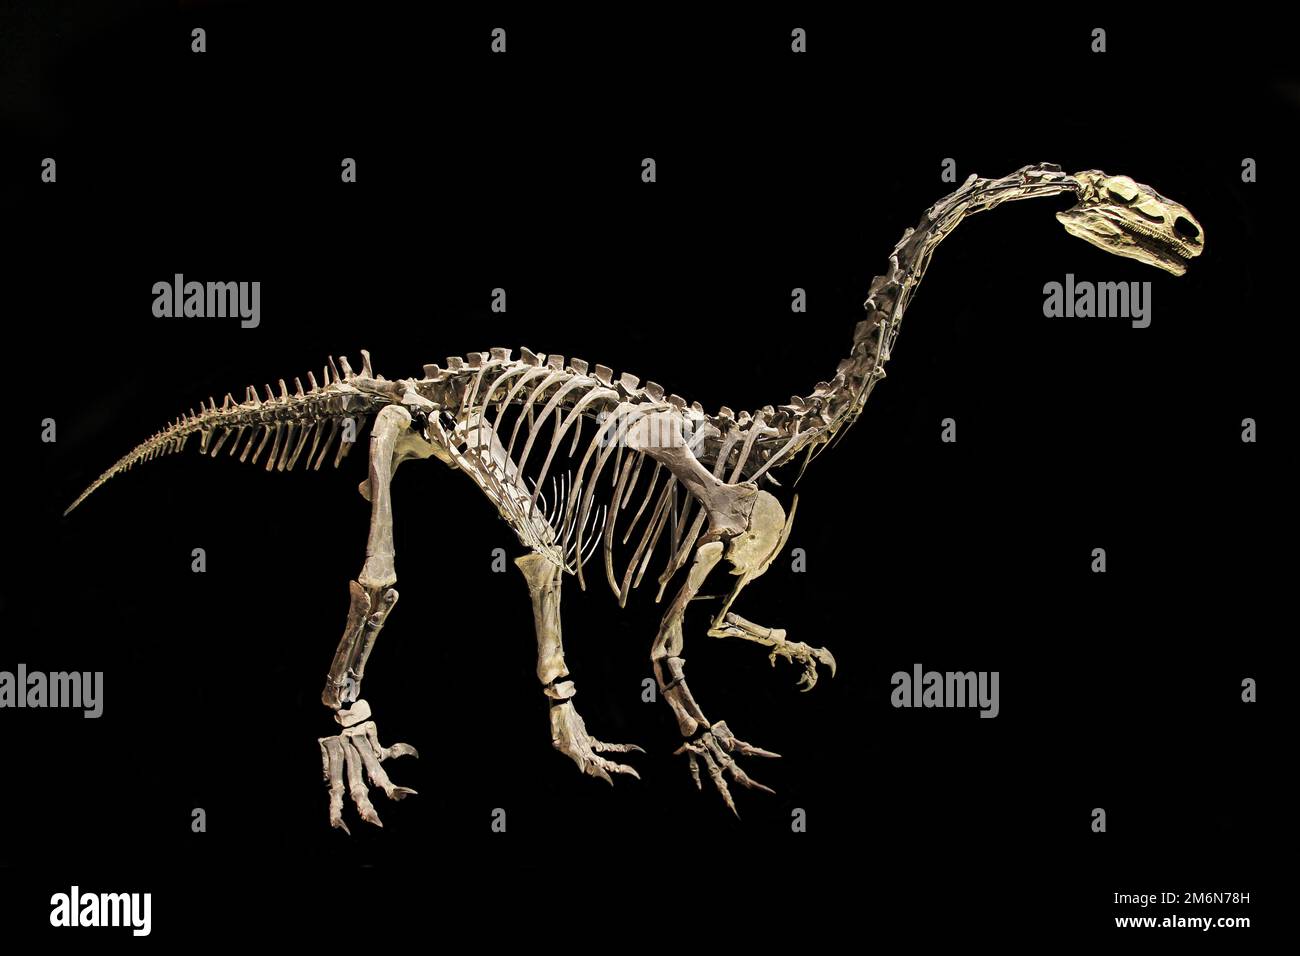 Esqueleto de tamaño verdadero.Plateosaurus engelhardti-Tiras-Switserland.El más antiguo de los dinosaurios de cuello largo.Más tarde en el período Jurásico Plateosaurus y otros miembros de la familia dieron paso a los dinosaurios verdaderamente gigantescos de cuello largo,los saurópodos. Foto de stock